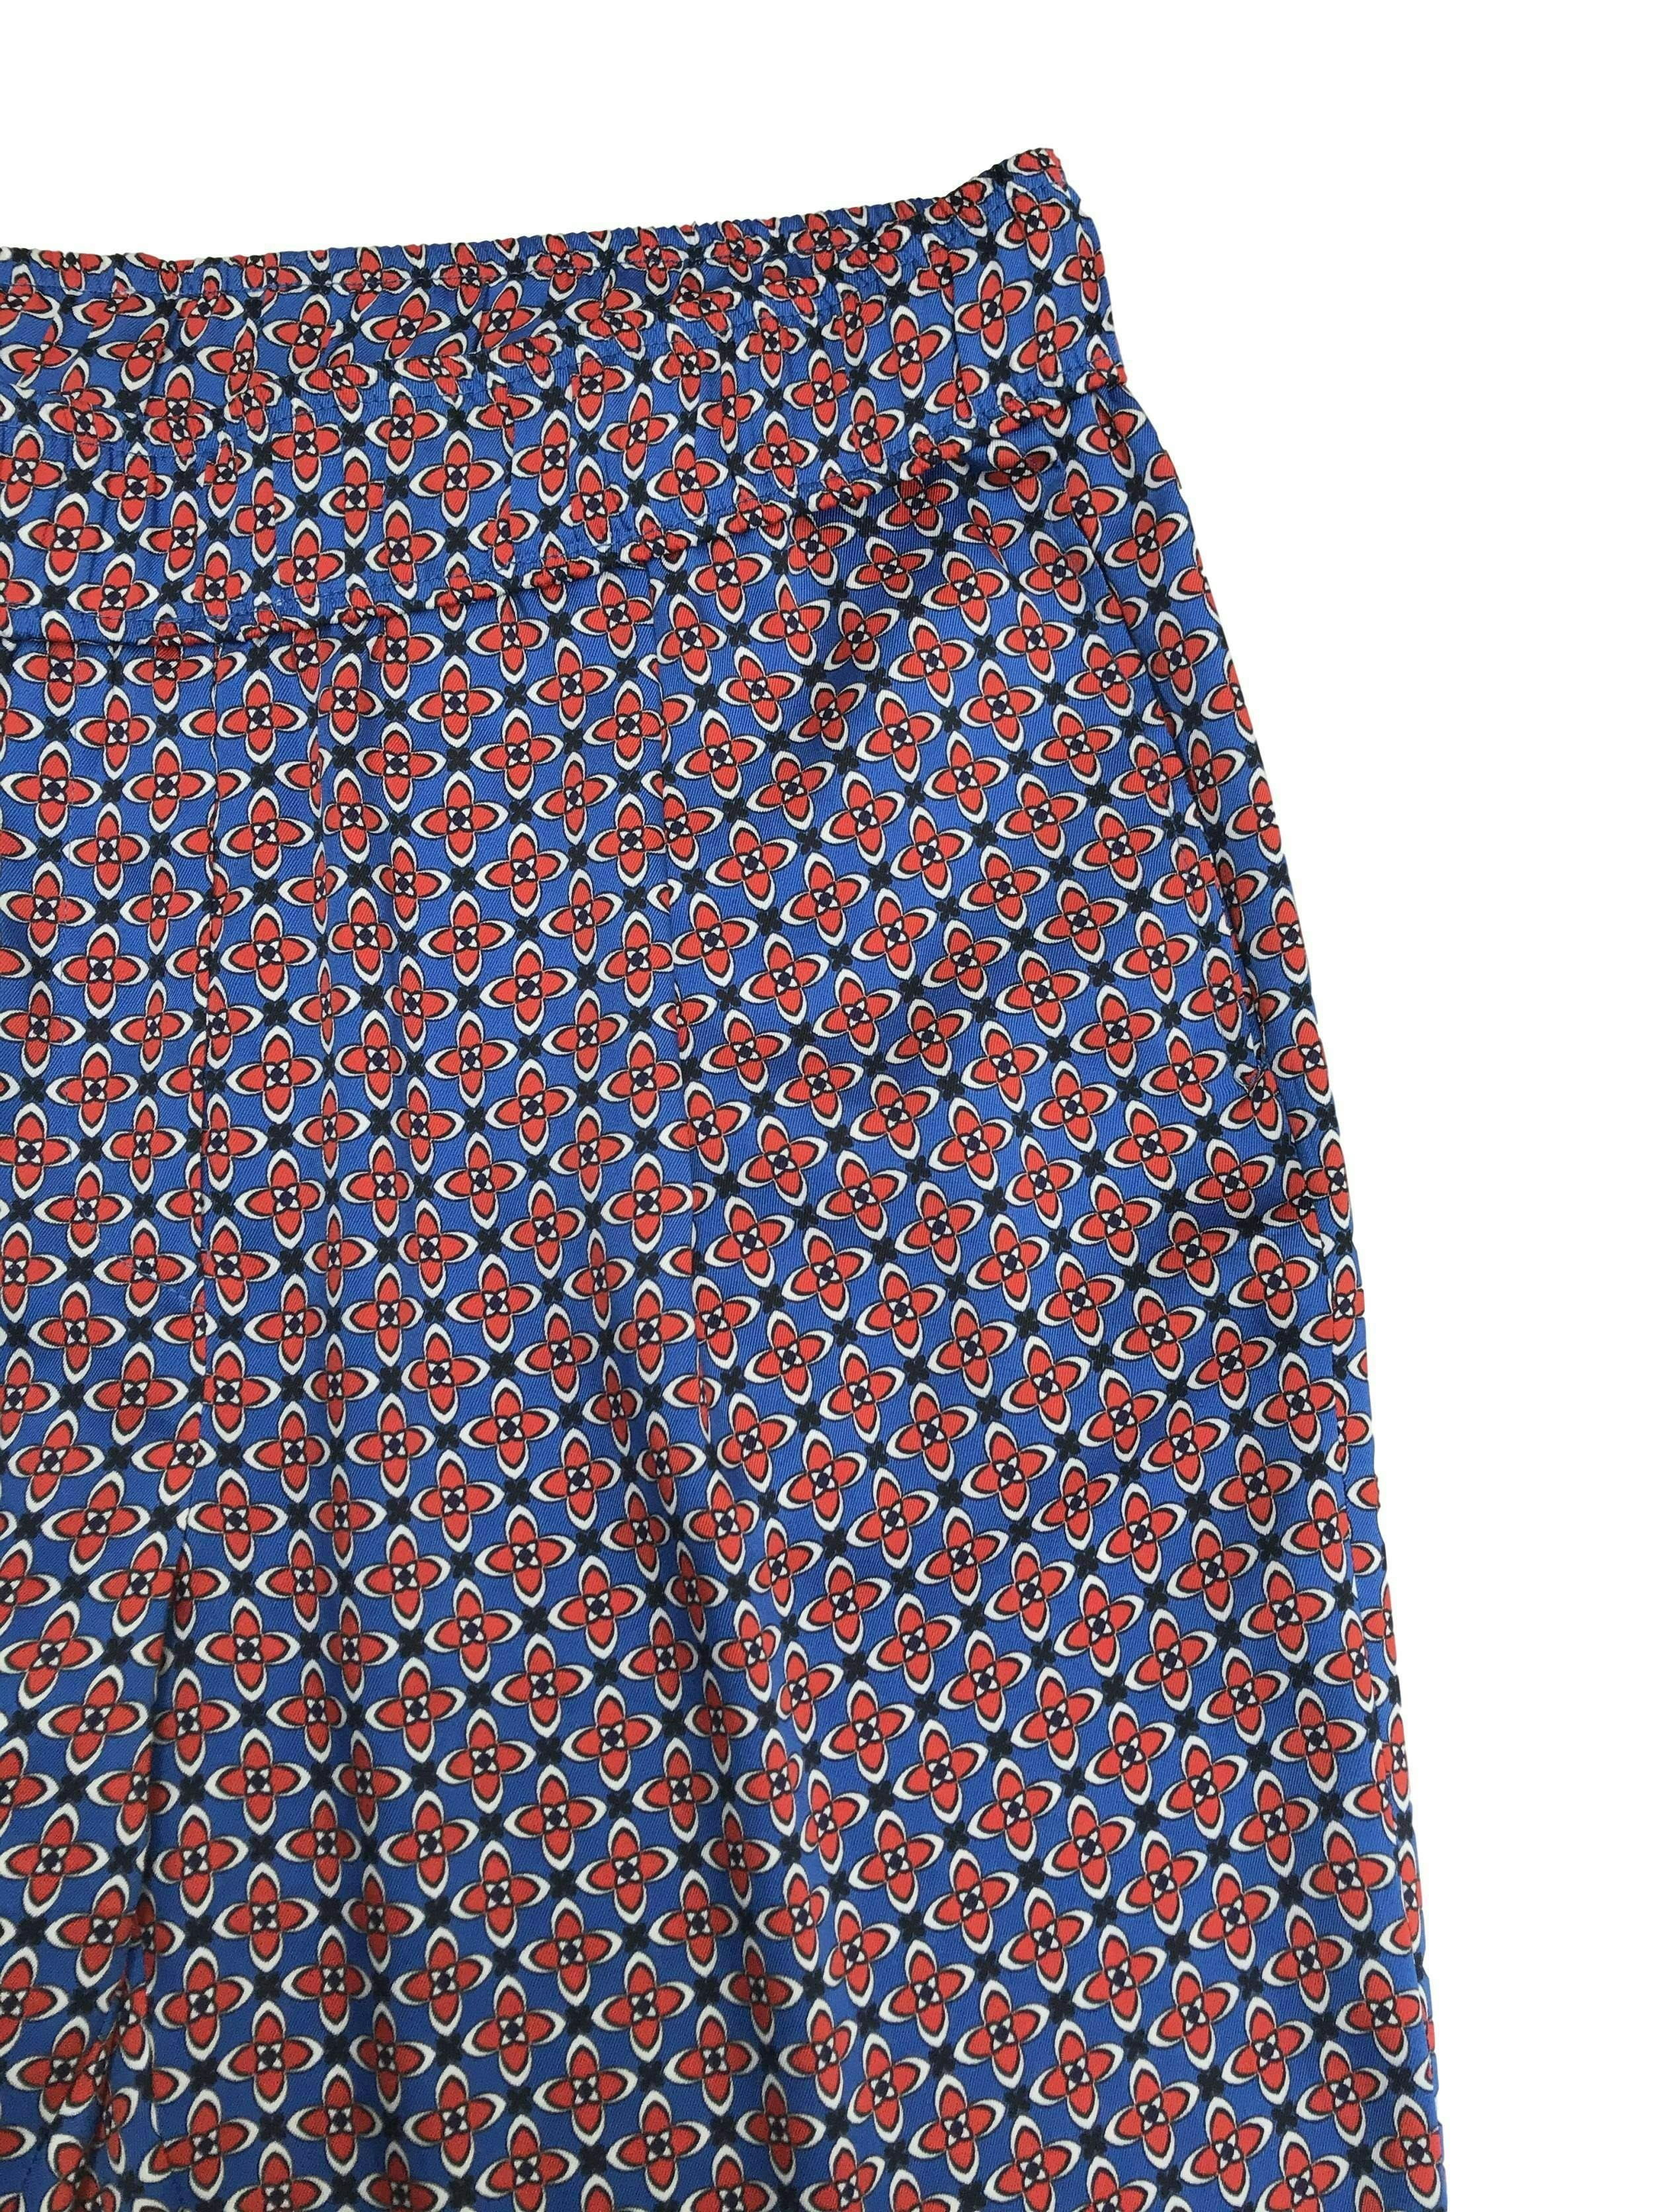 Pantalón fluido Sandro Paris tipo seda con estampado barroco azul y rojo, con bolsillos laterales. Pretina 76cm. Trendy. Precio original S/ 350